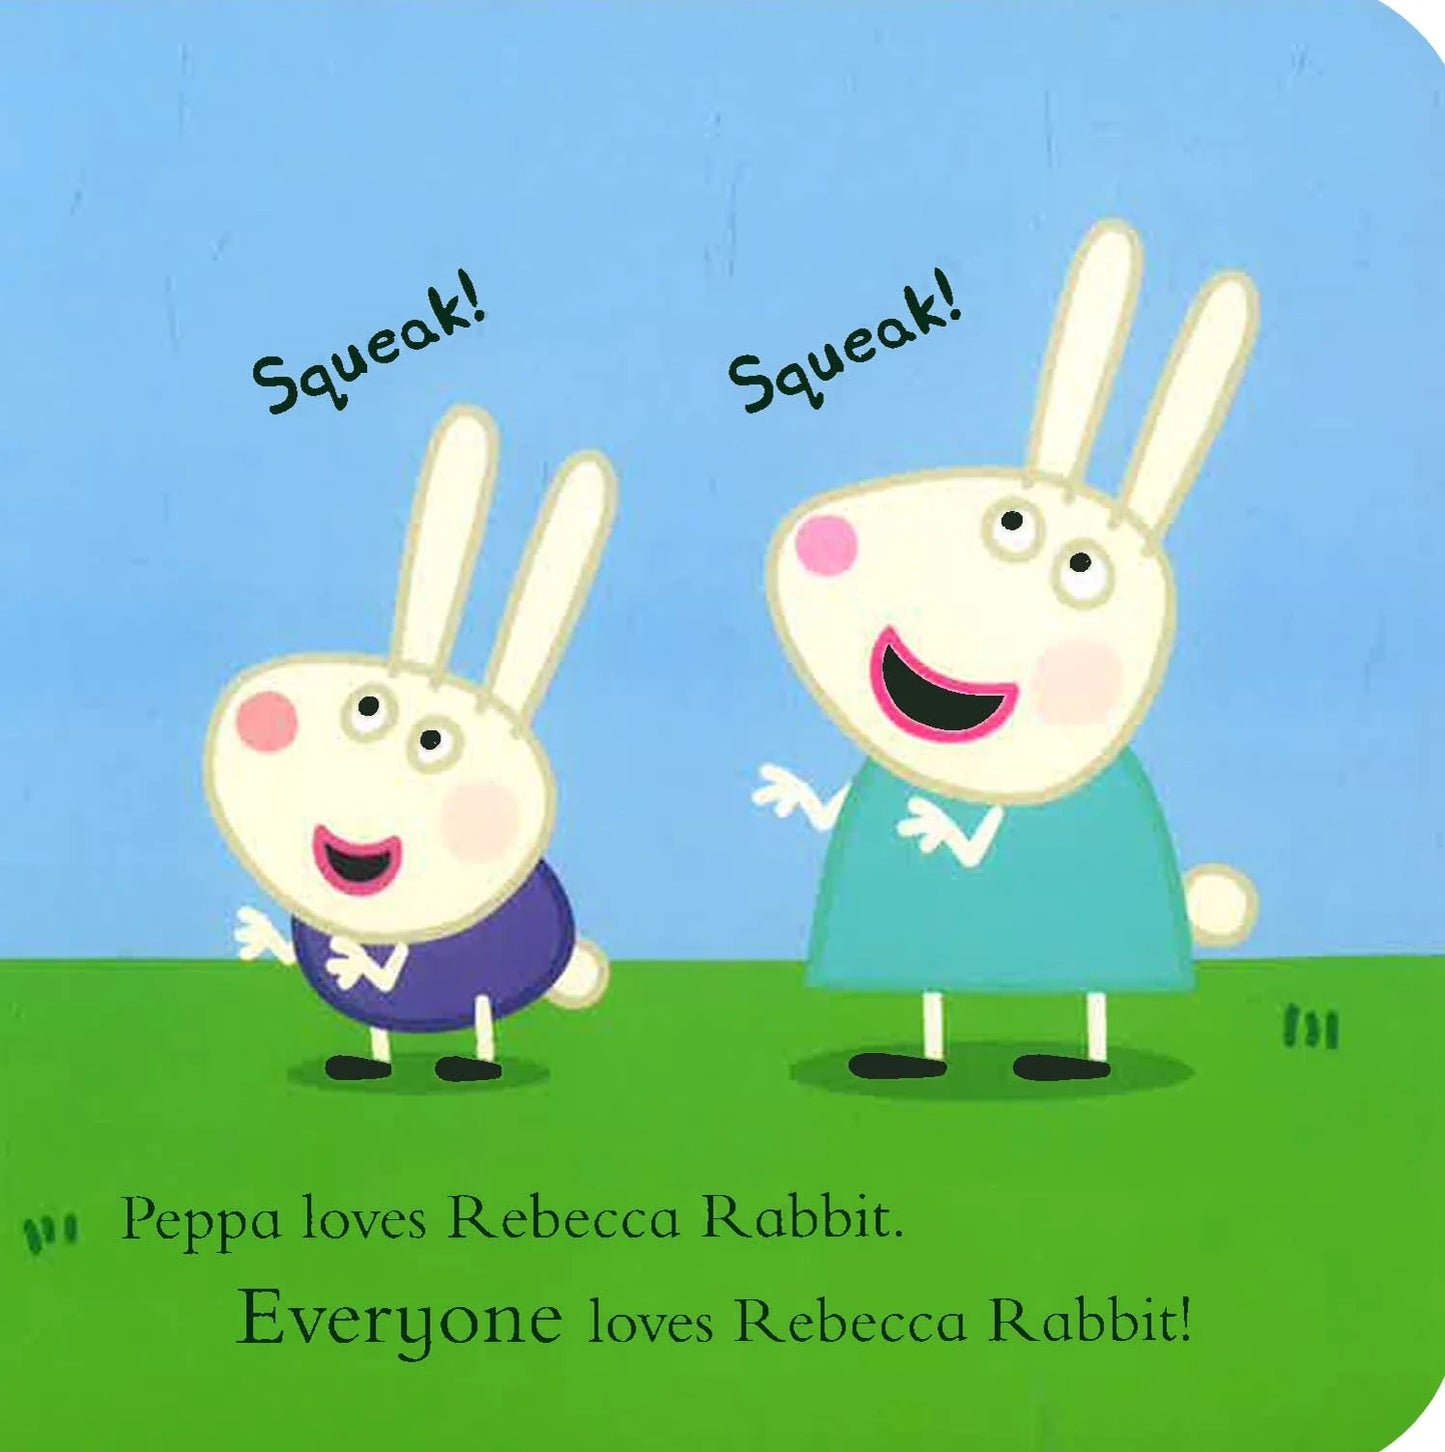 Rebecca Rabbit Board Book - Peppa Pig and Friends